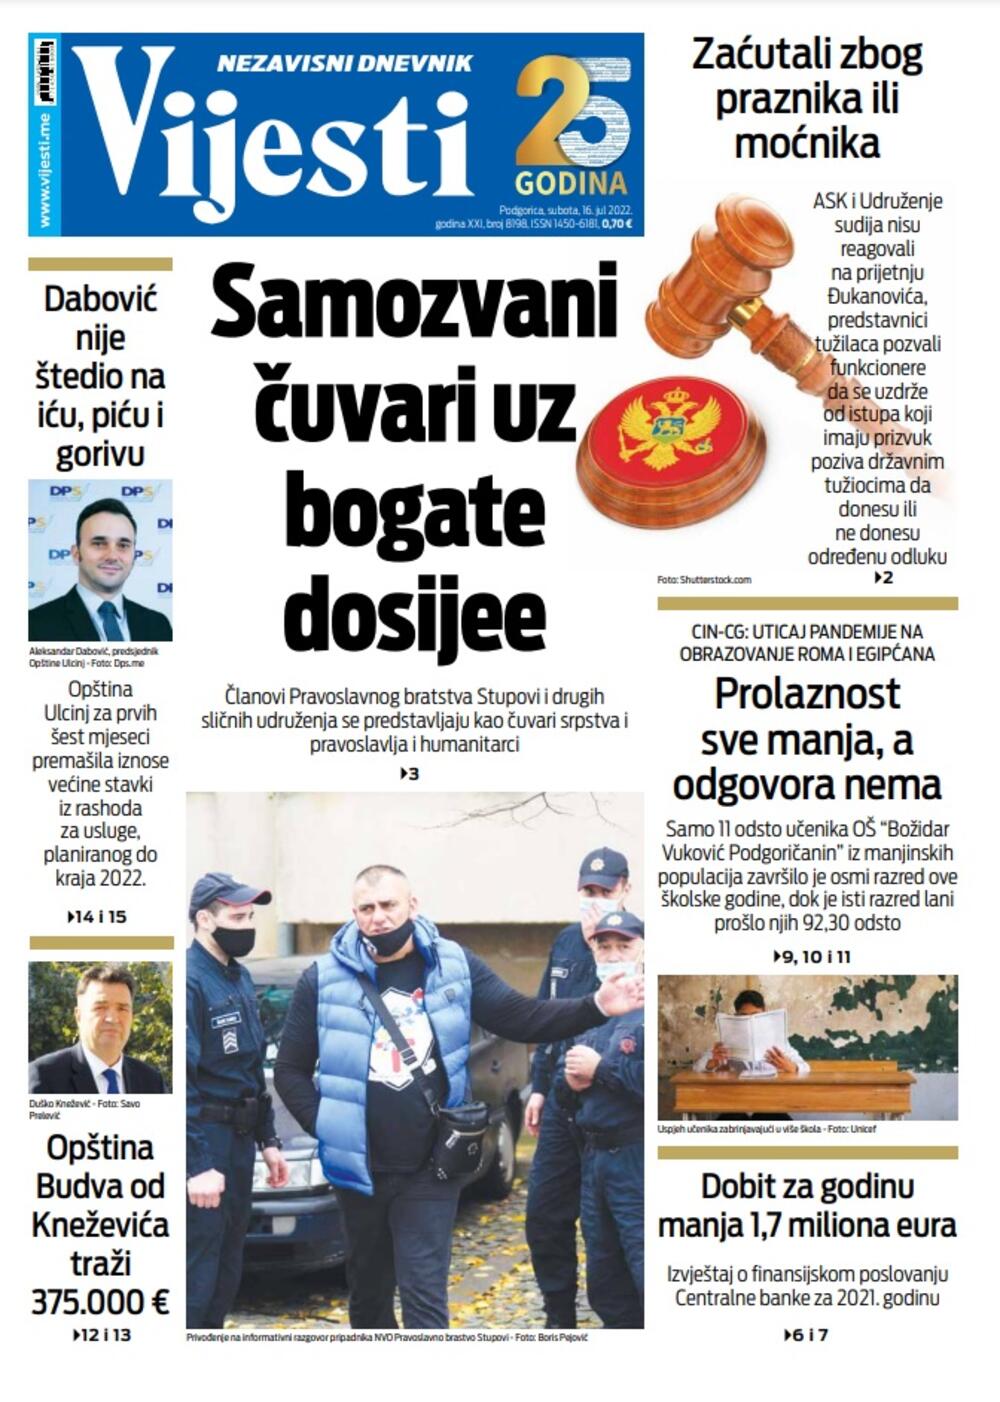 Naslovna strana "Vijesti" za 16. jul 2022., Foto: Vijesti